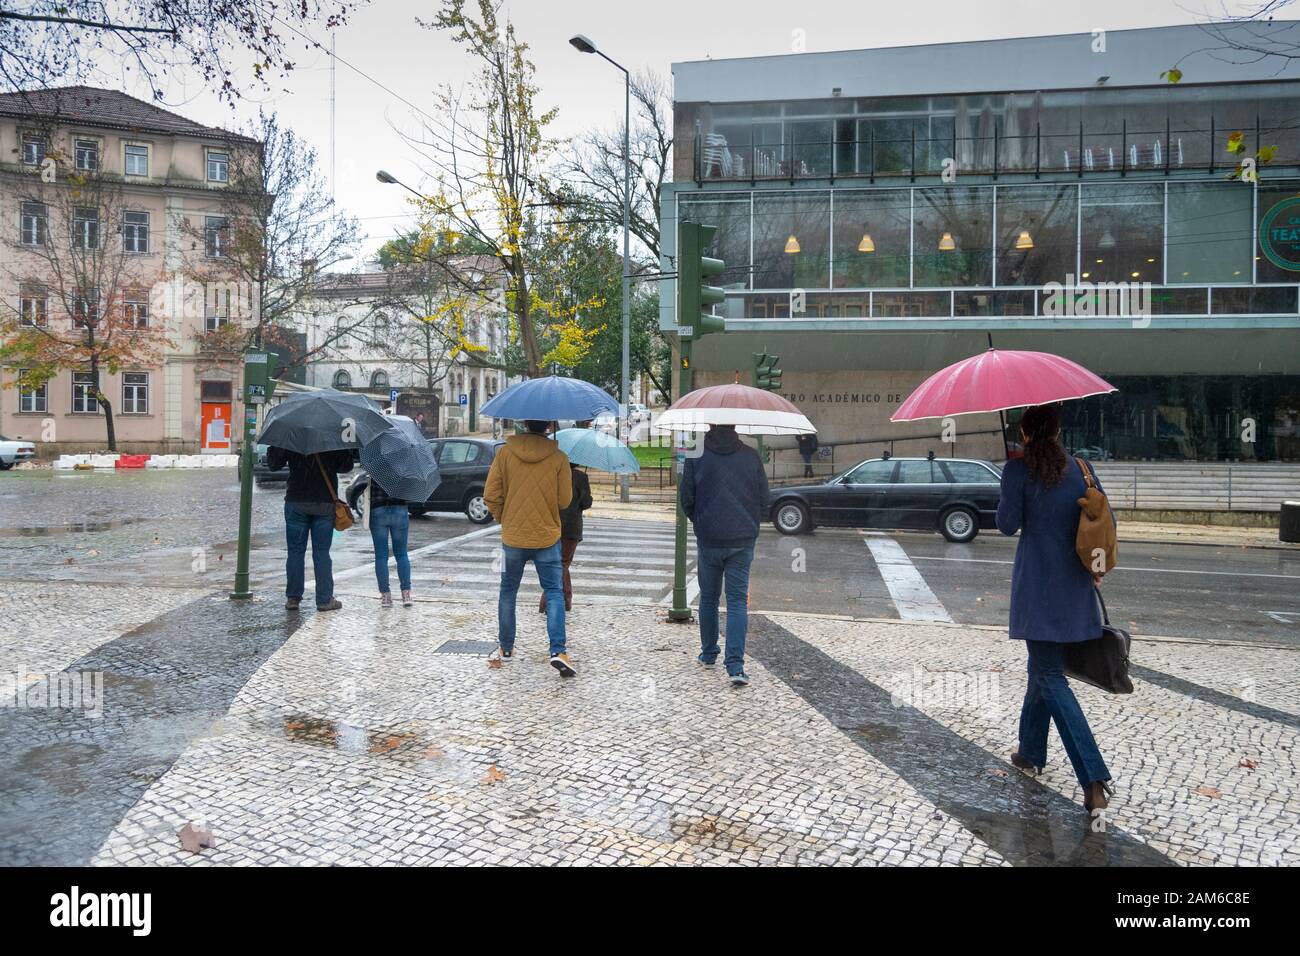 COIMBRA, PORTUGAL - 04 janvier 2016 - les gens essaient de rester au sec pendant les fortes pluies dans le Praca da Republica dans le centre de Coimbra Portugal Banque D'Images